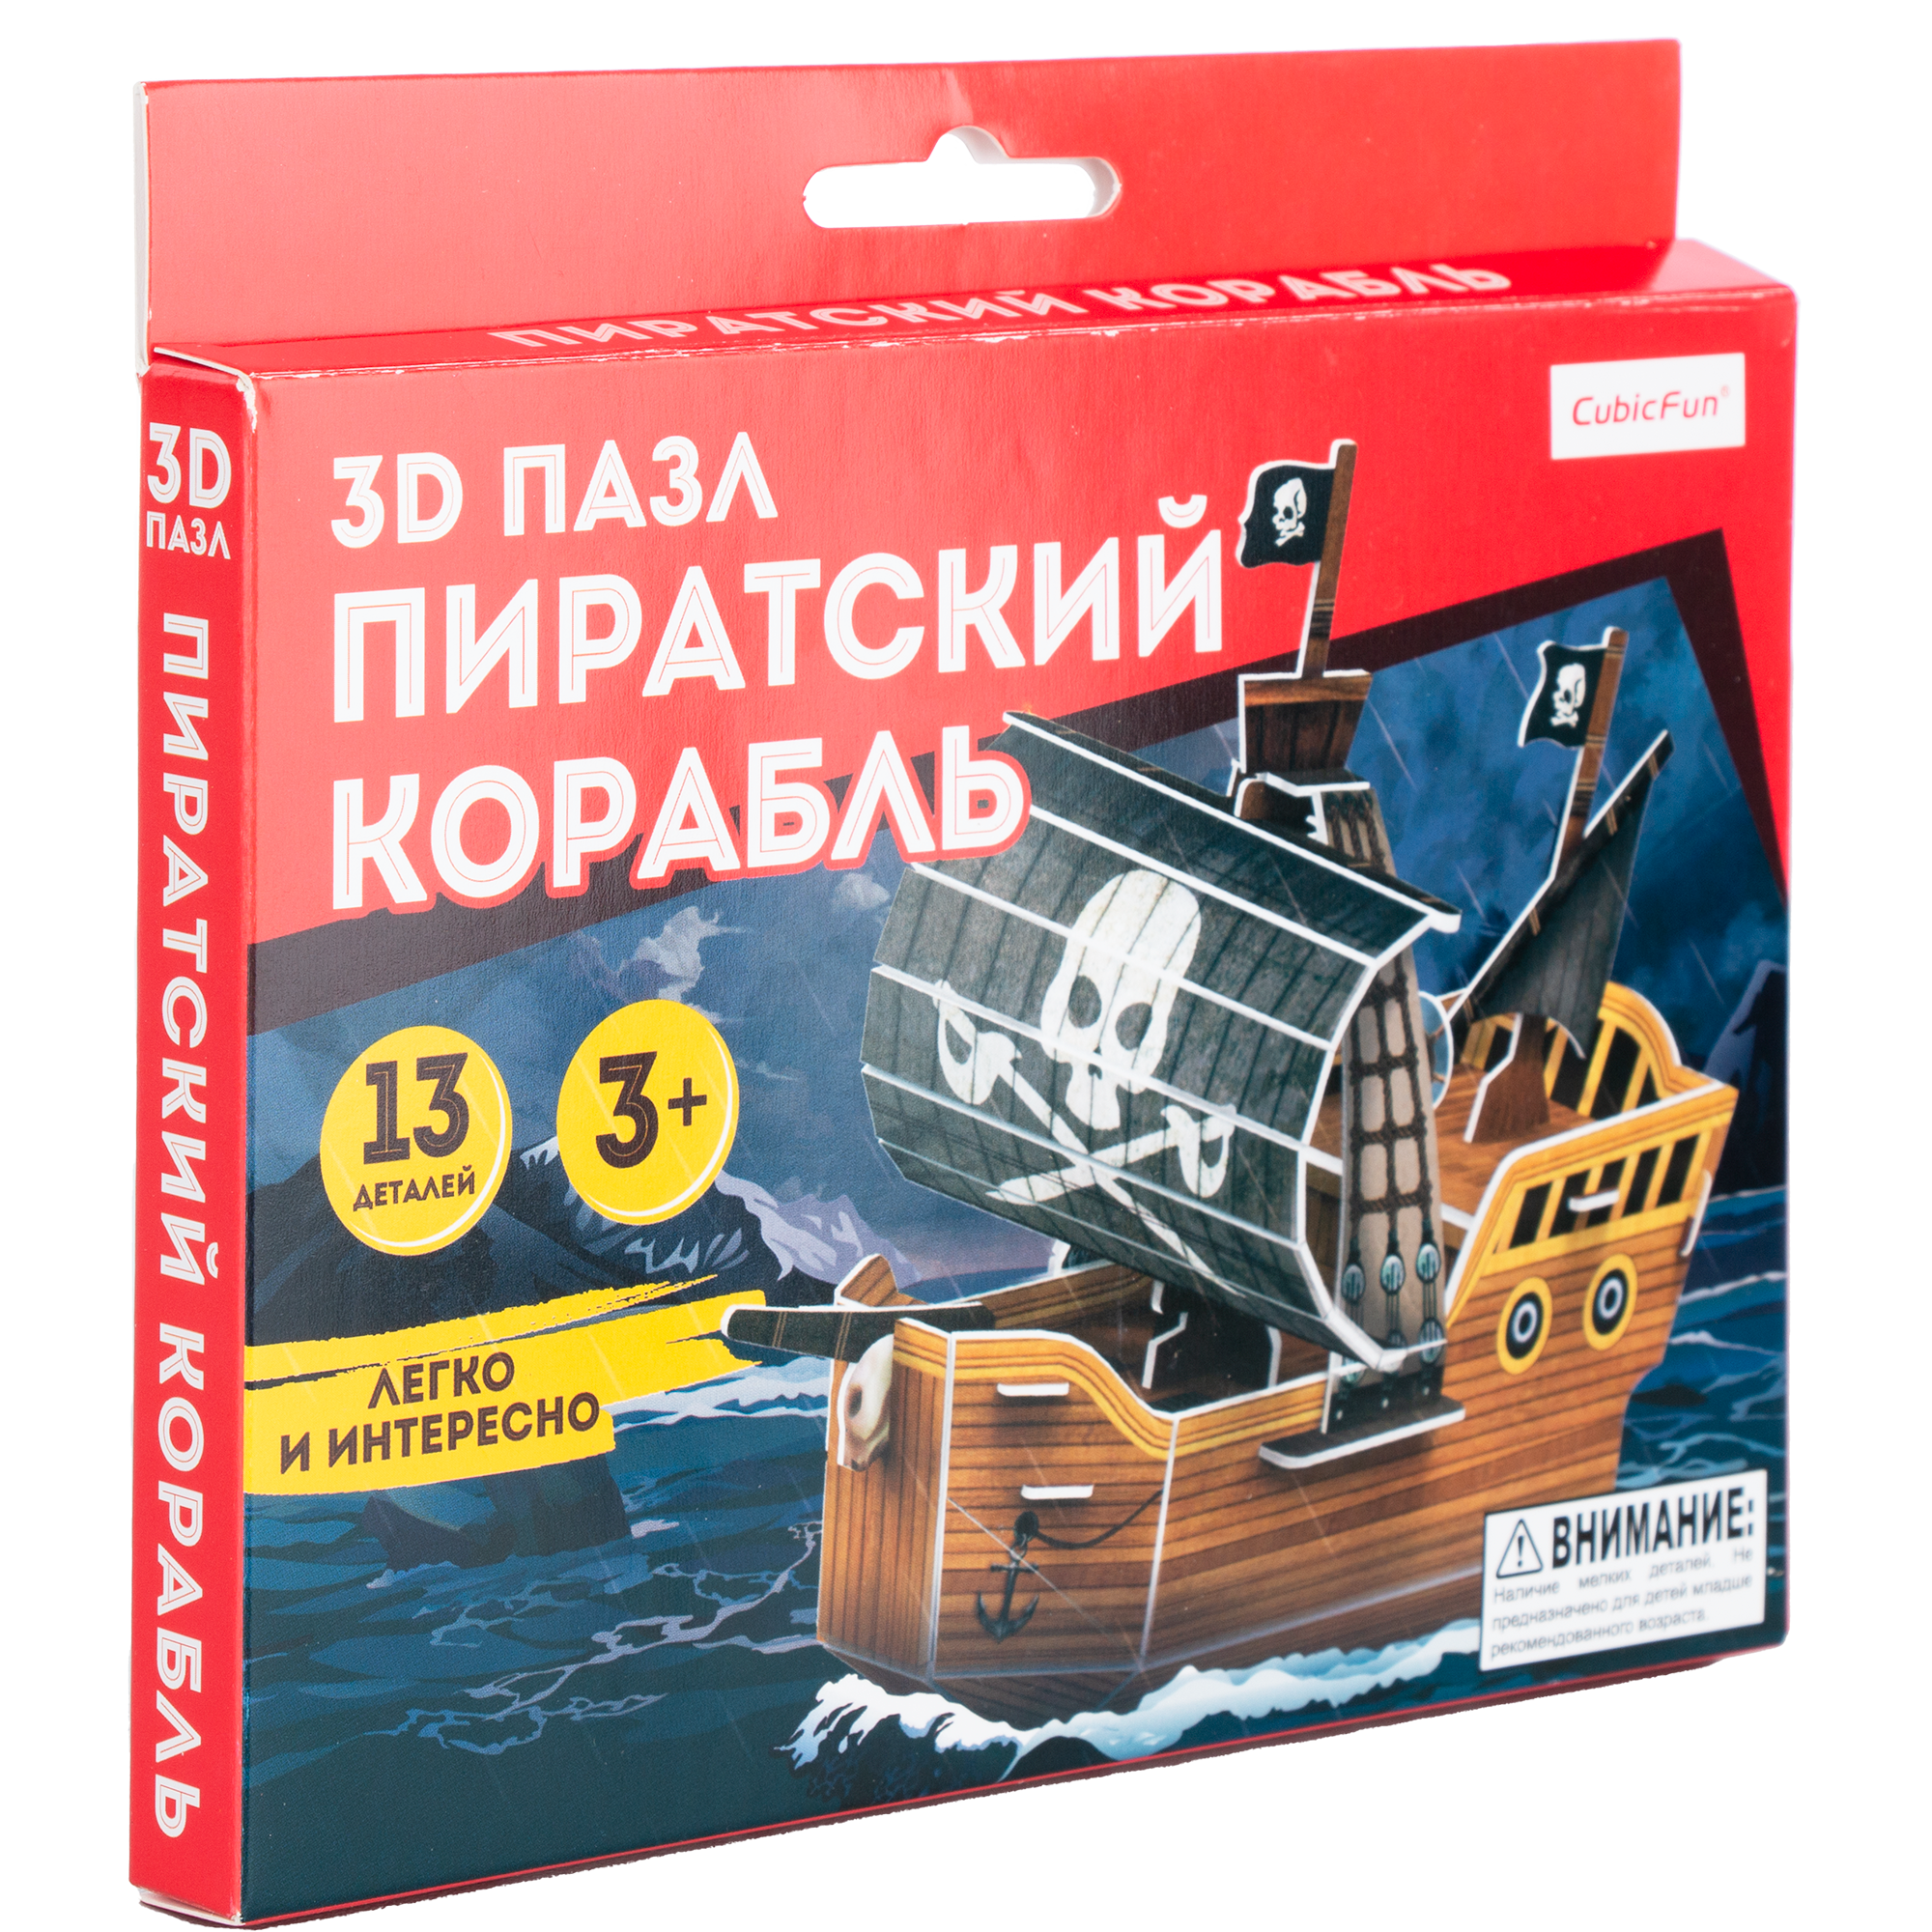 Пазл CubicFun 3D Пиратский корабль 13элементов S3046h - фото 2